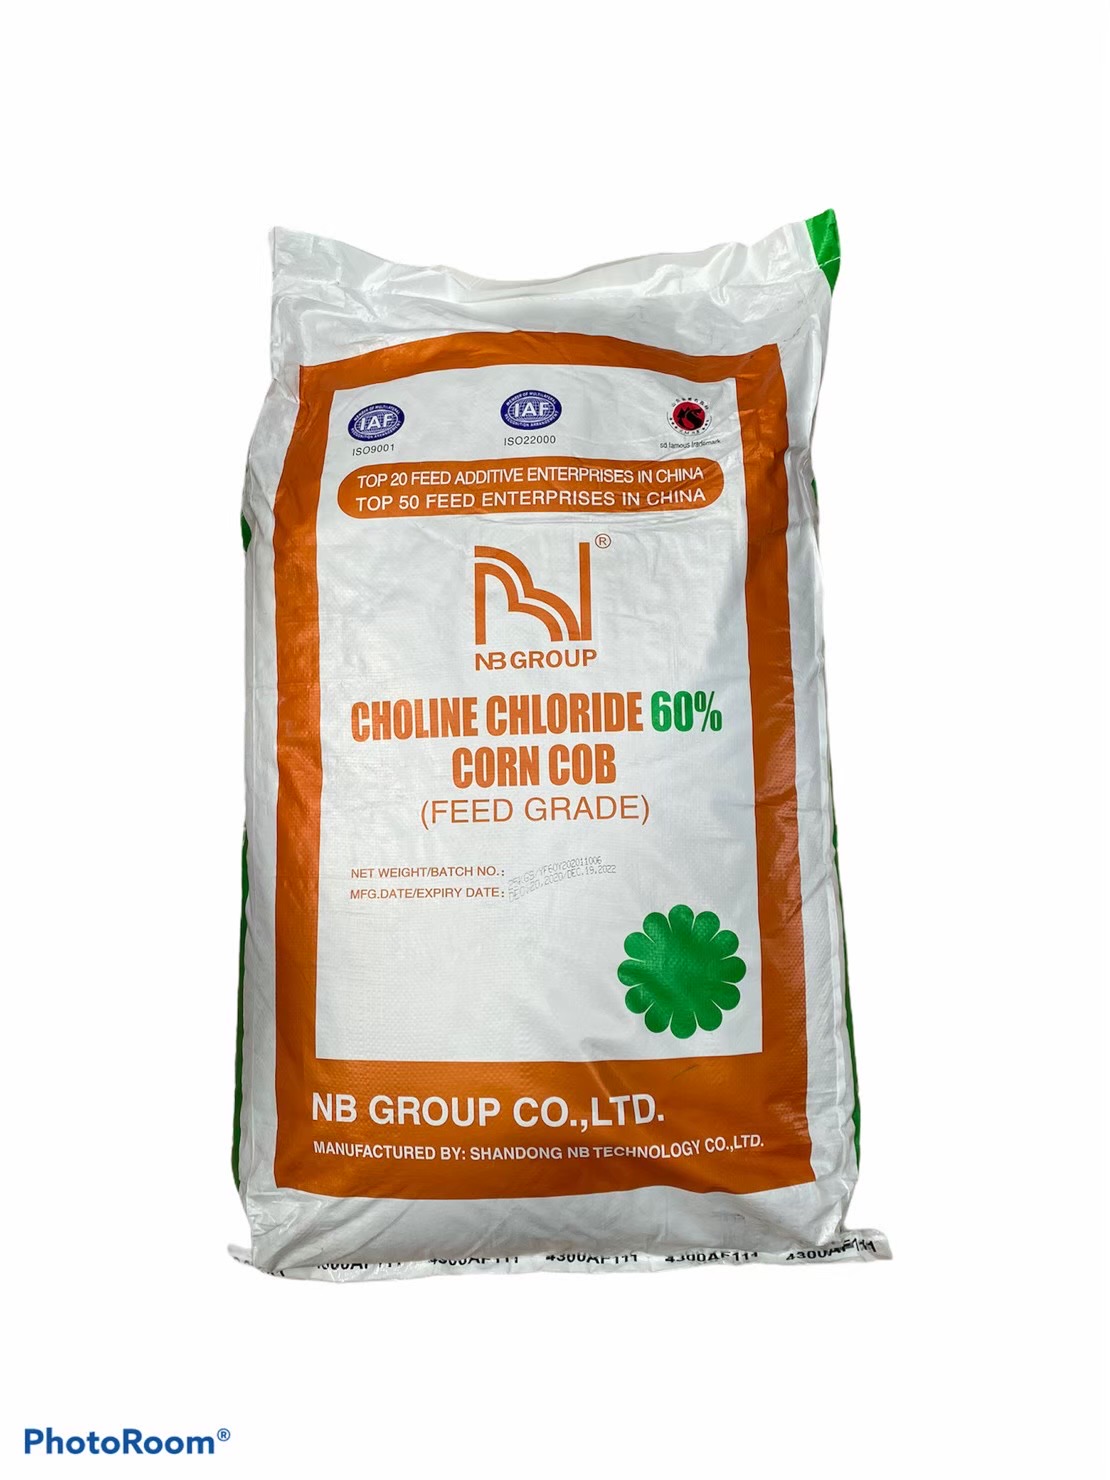 โคลีนคลอไรด์ choline chloride 60% feed grade